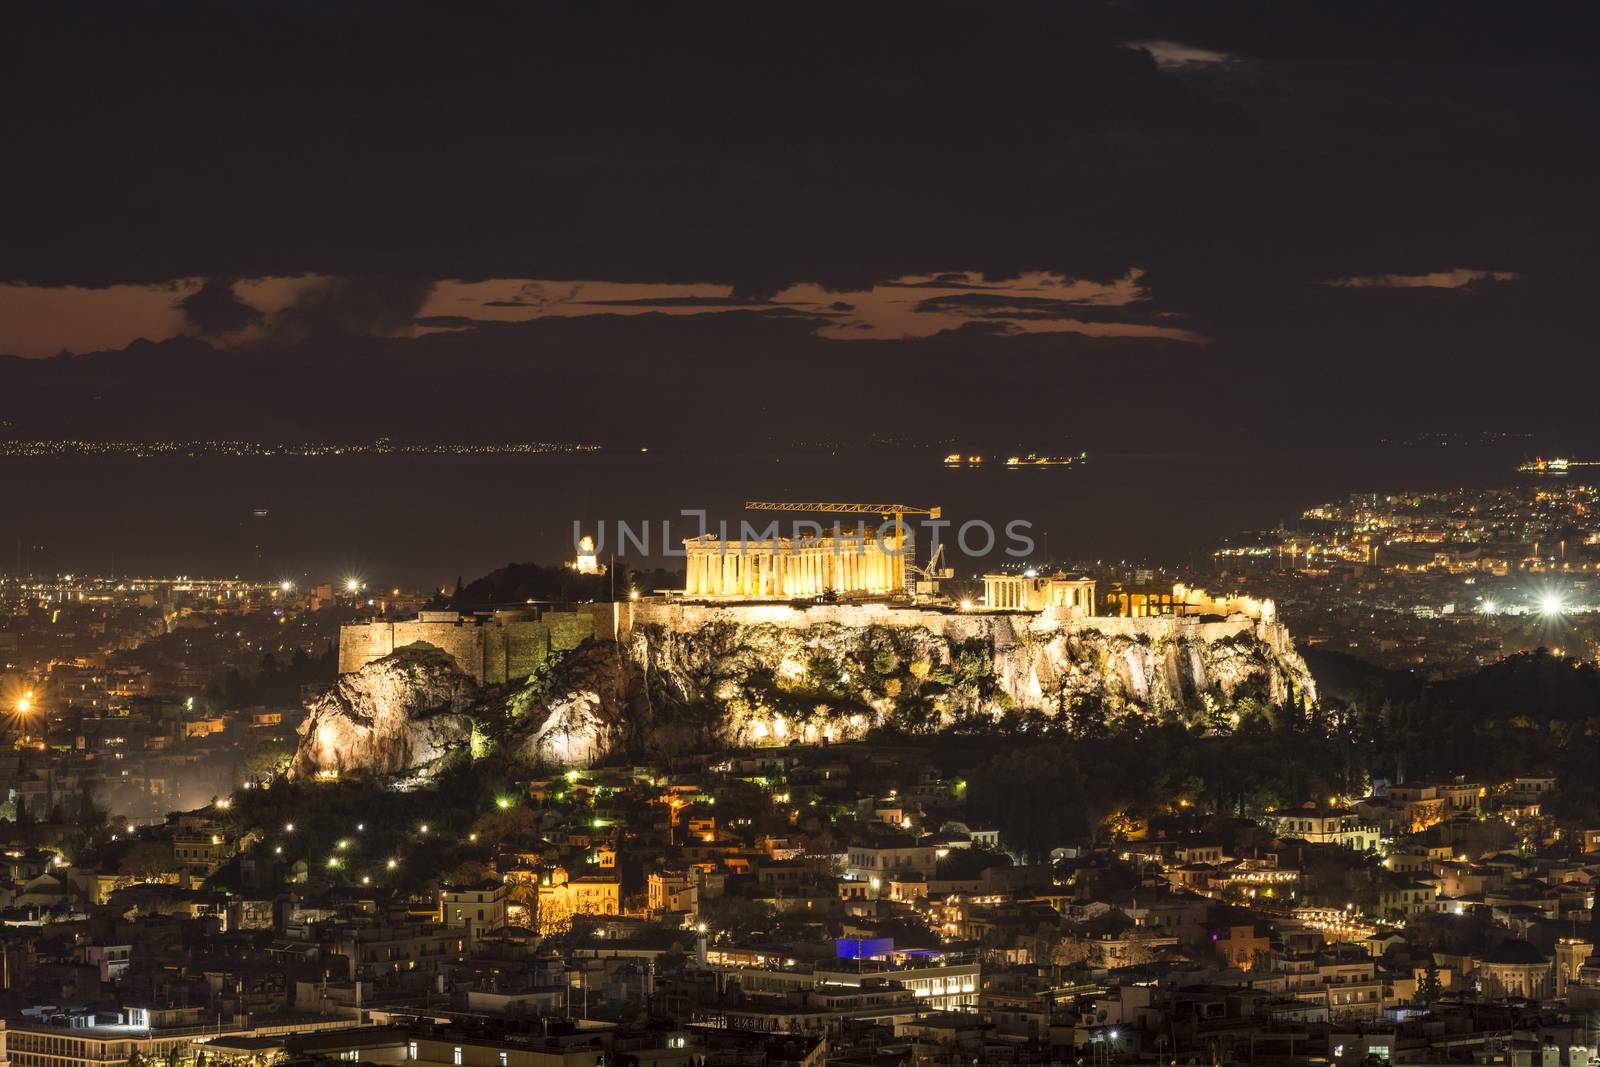 acropolis of athens at night by vangelis